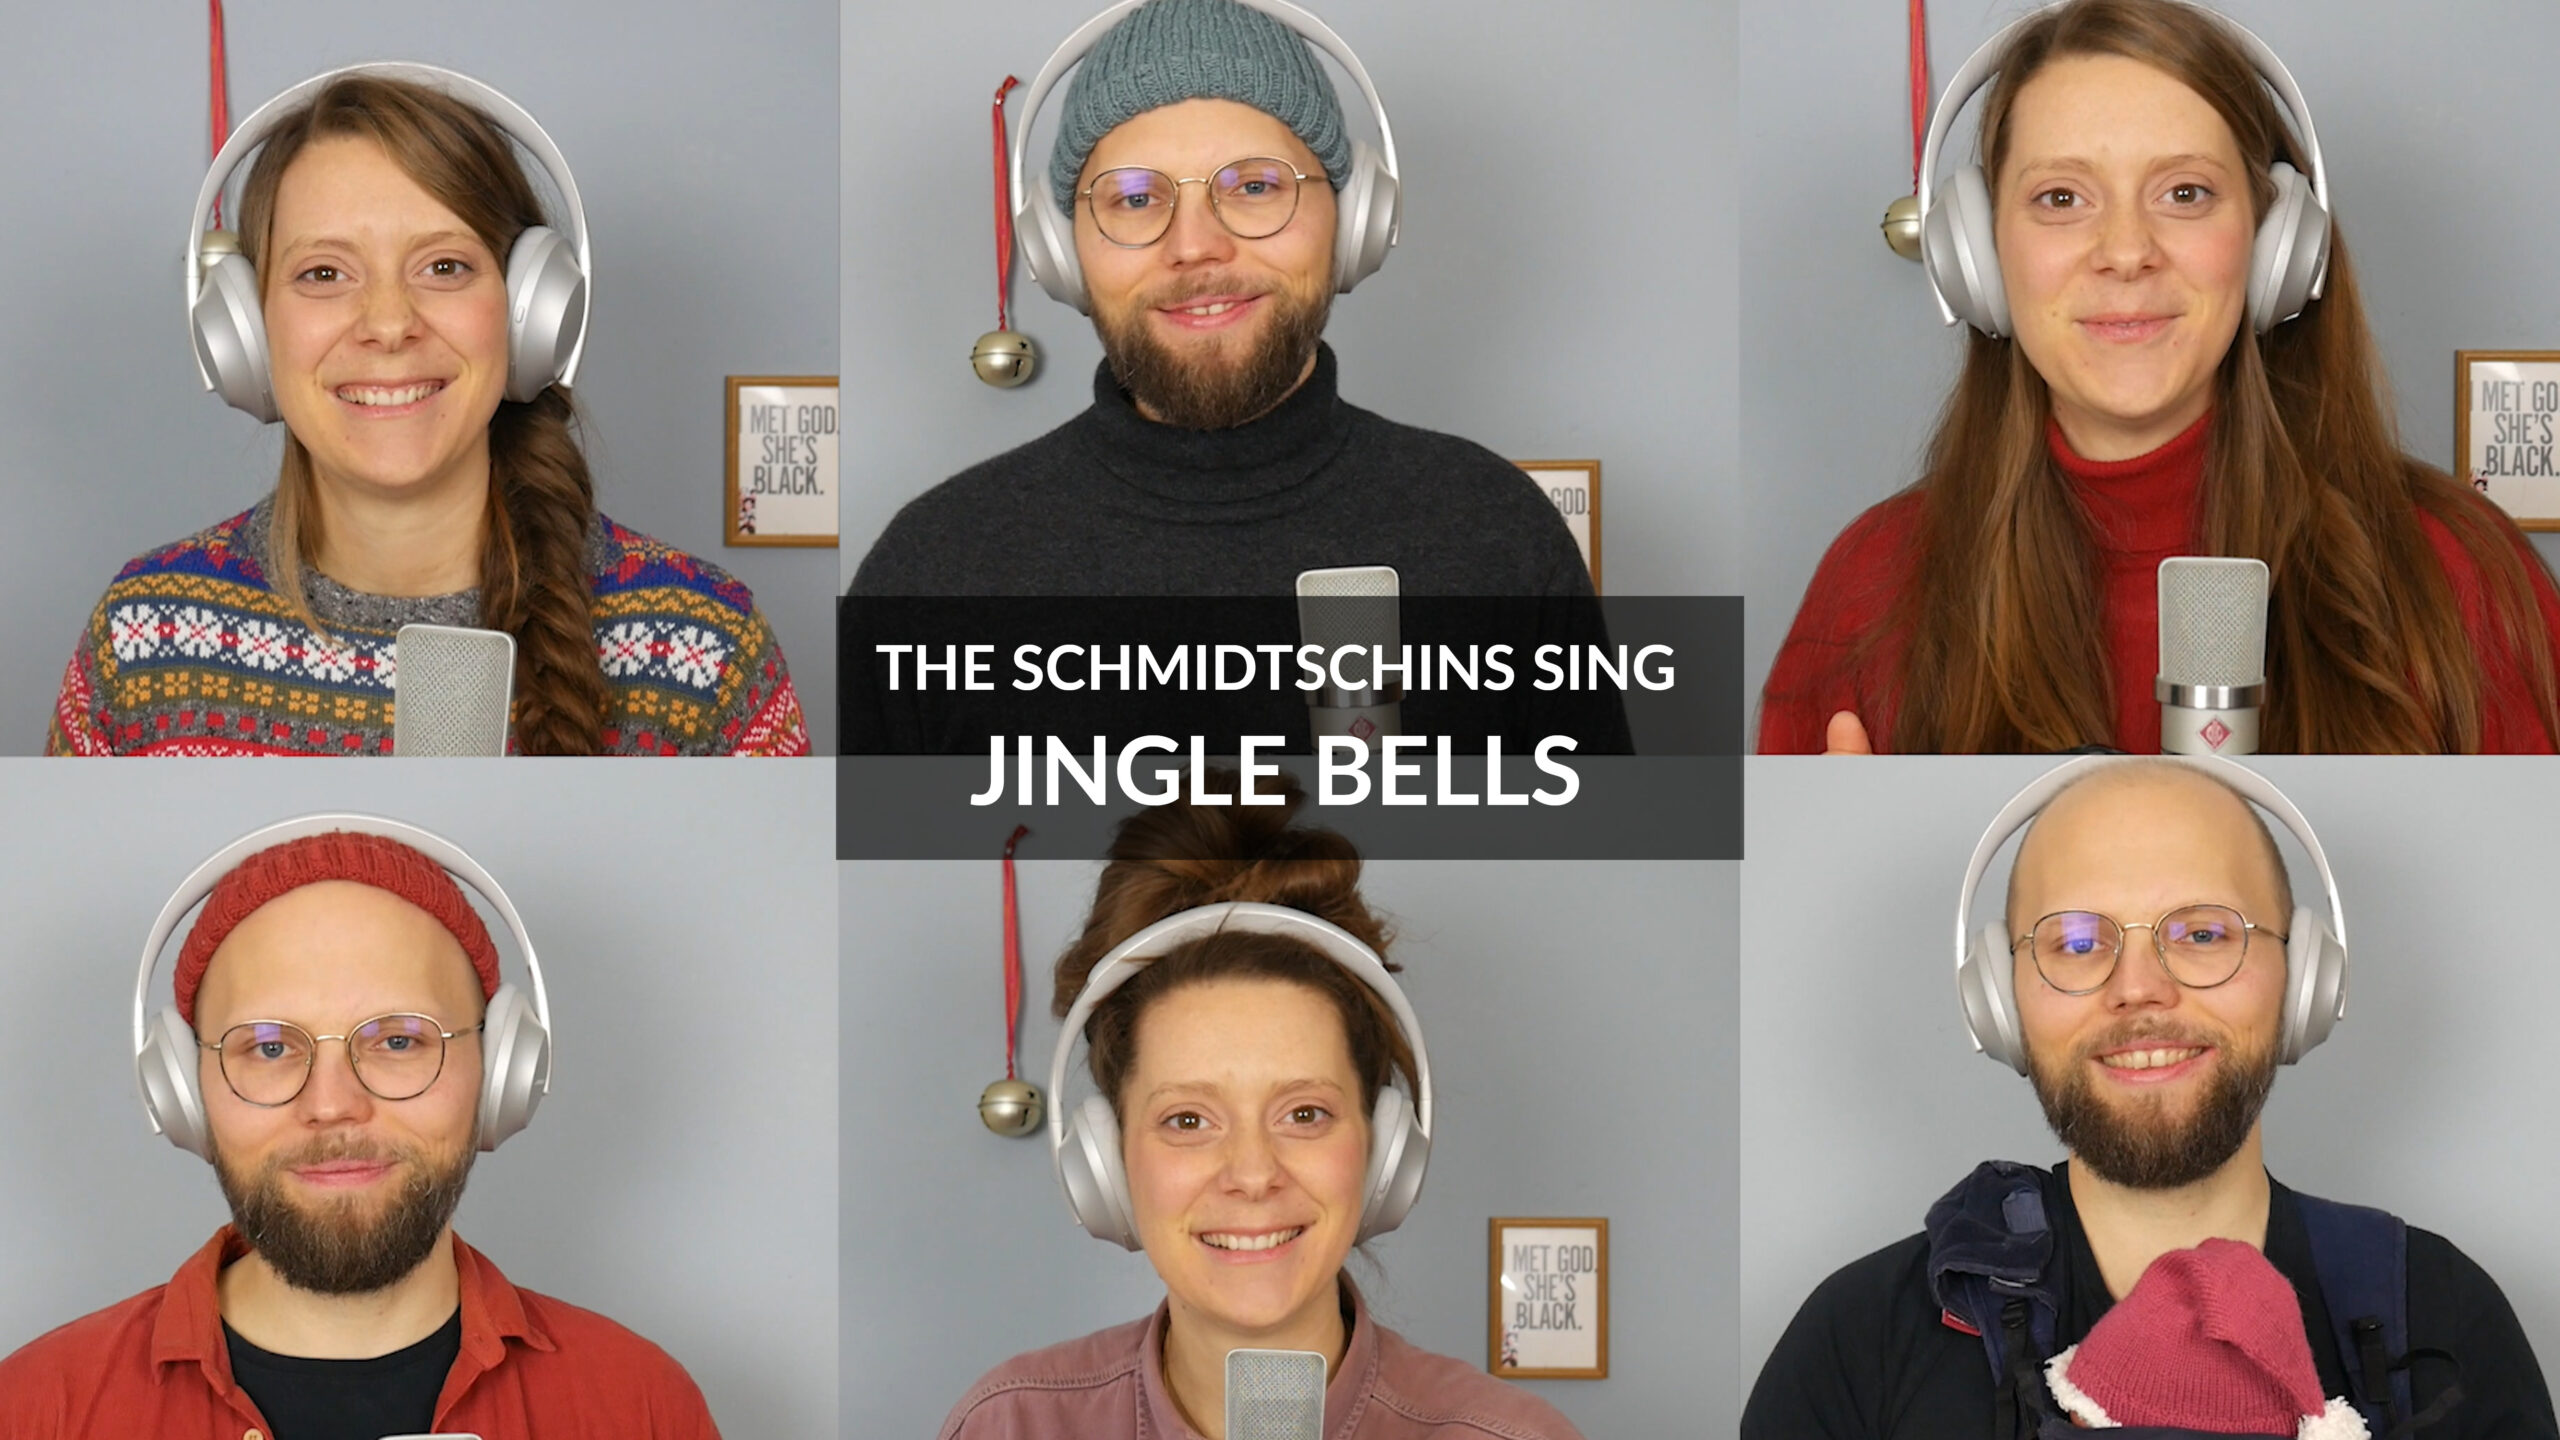 The Schmidtschins